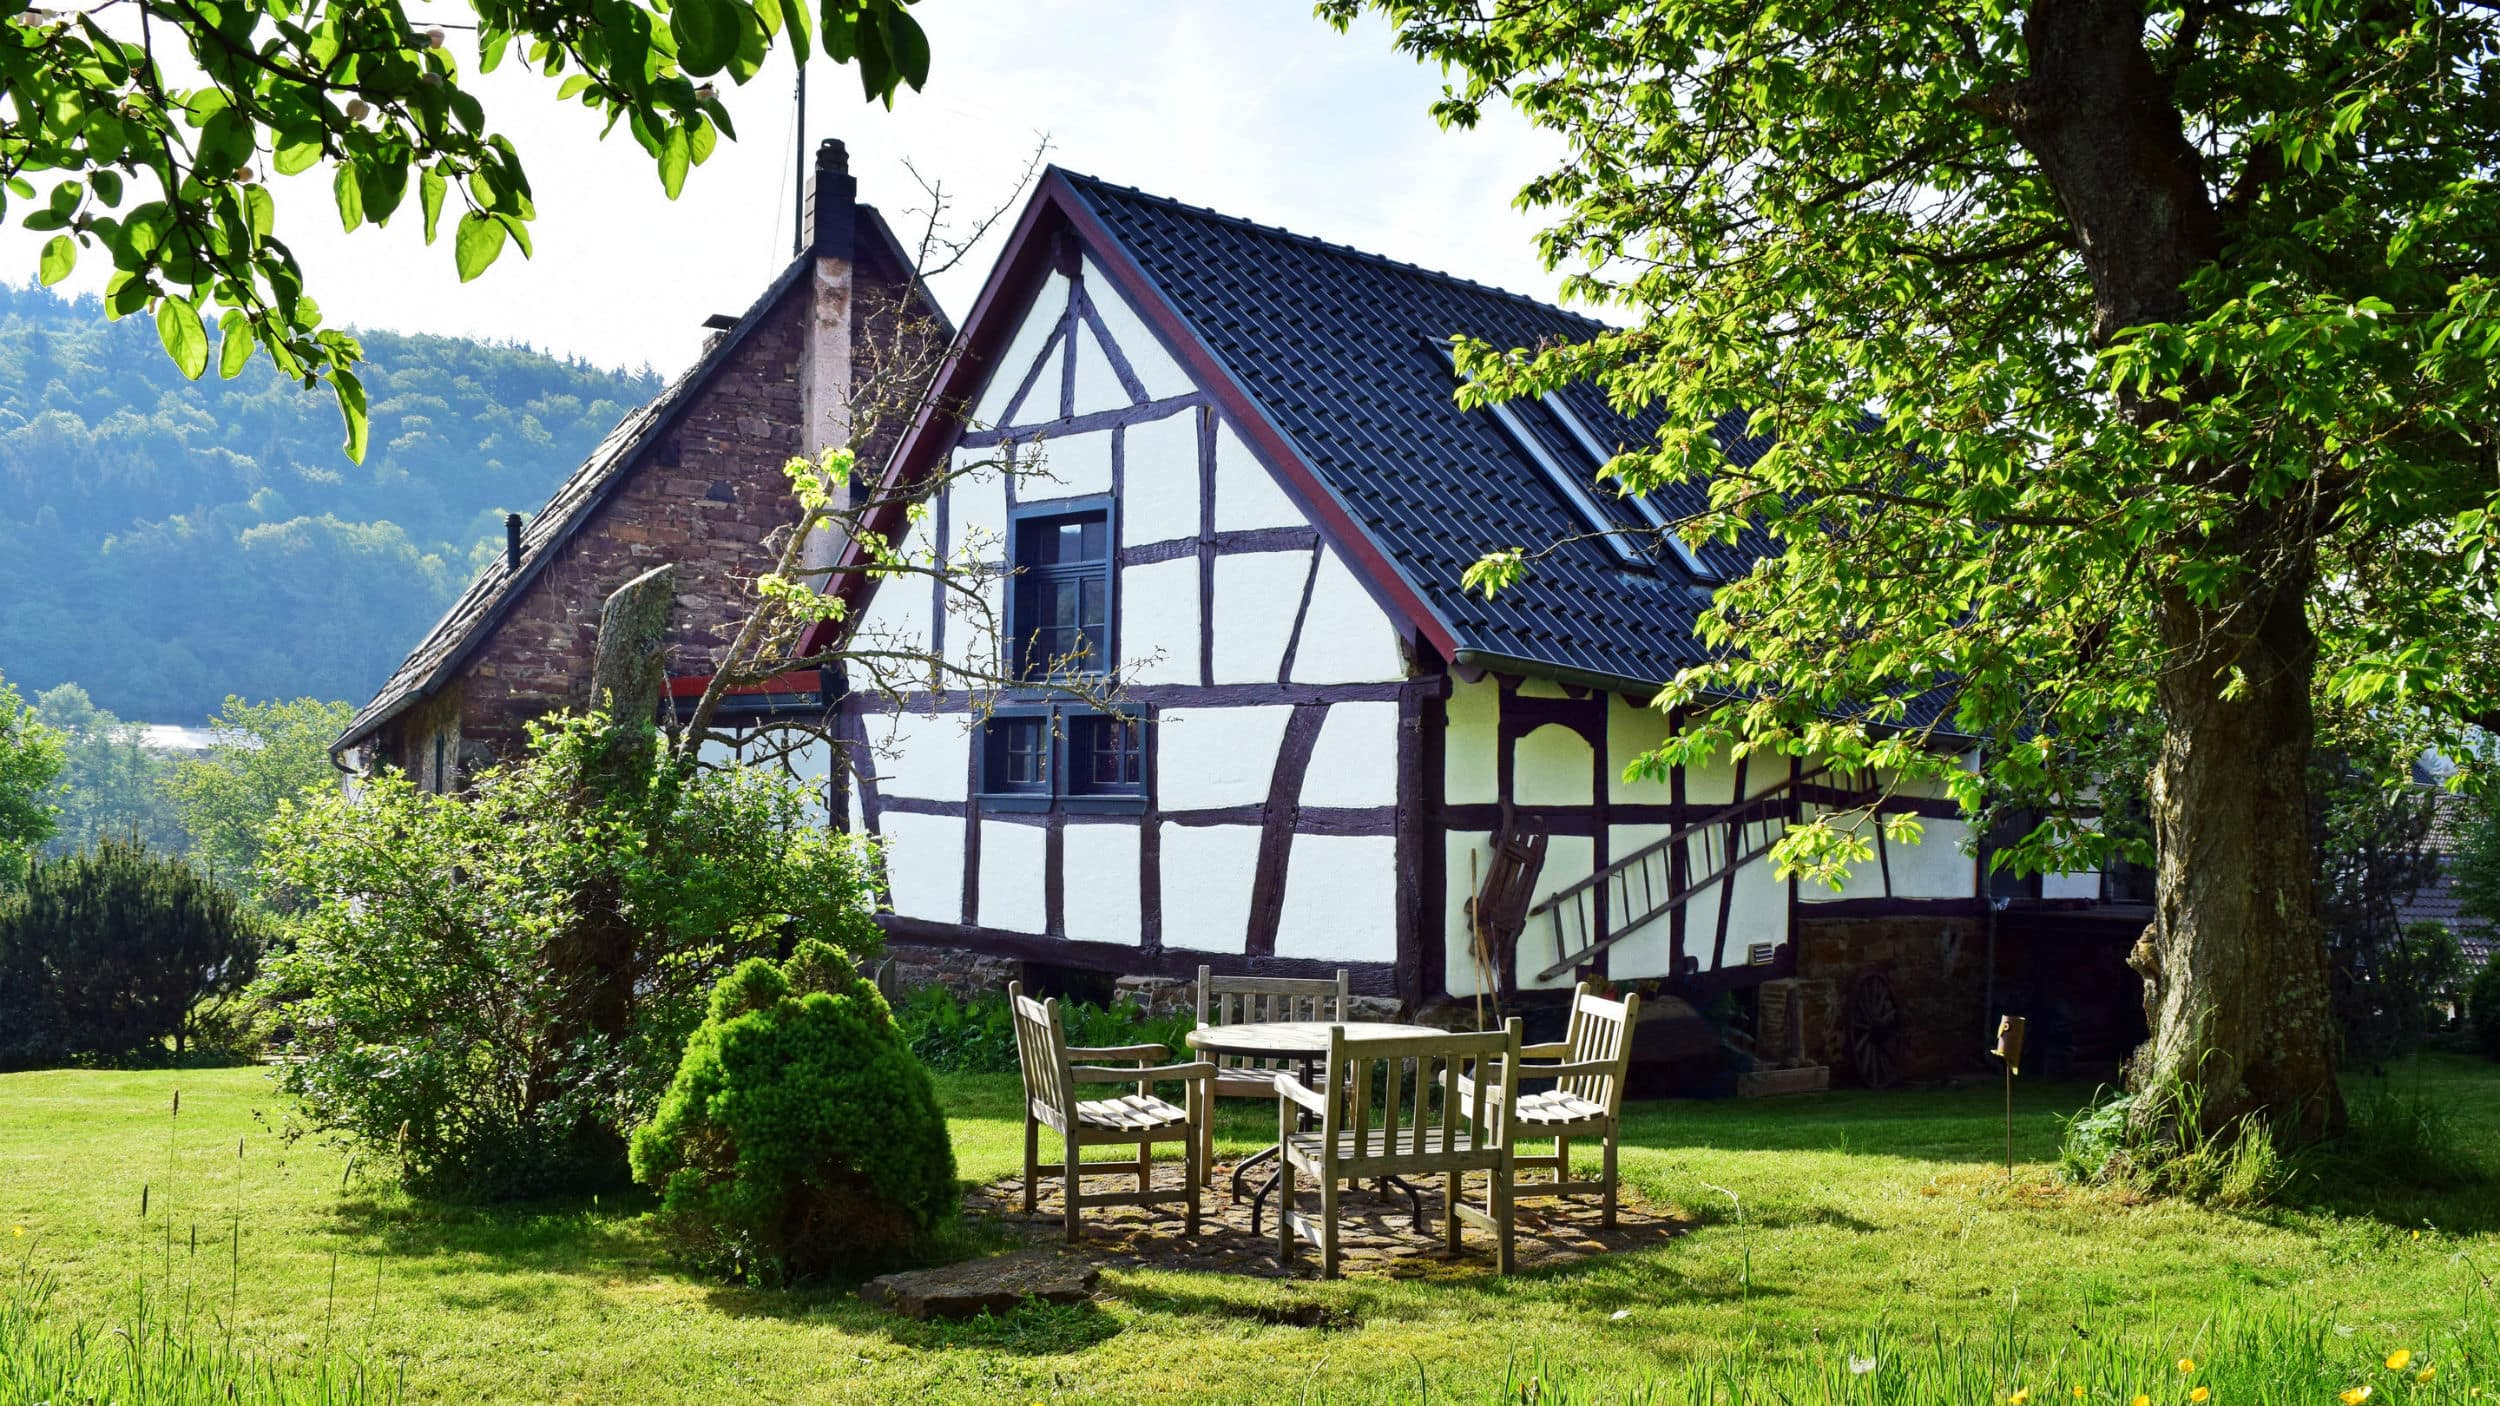 Actie en ontspanning met een huisje in Duitsland